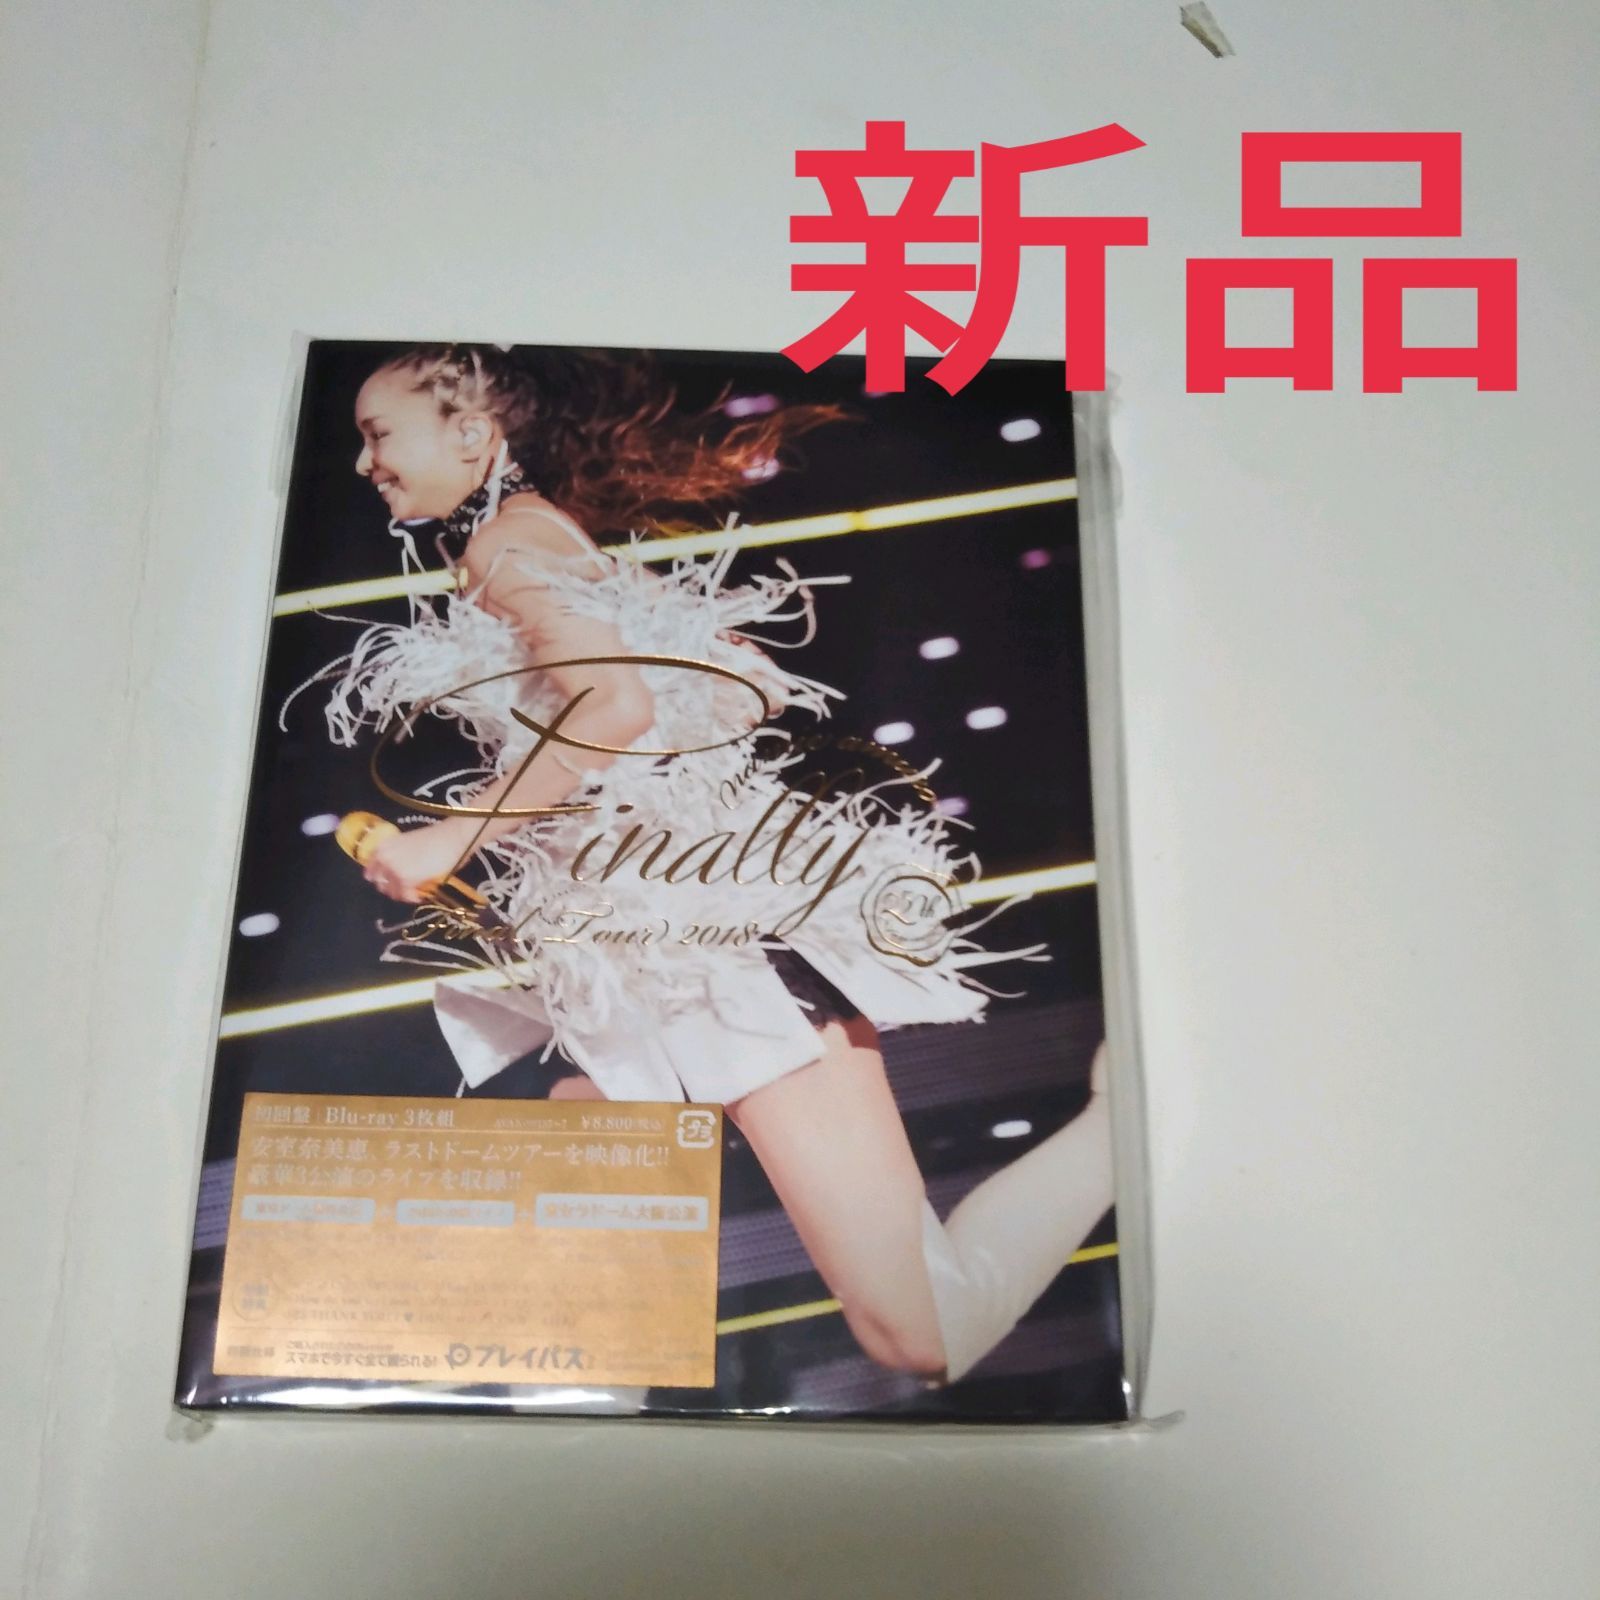 安室奈美恵 Blu-ray FinalTourFinally 新品未開封品 - ミュージック